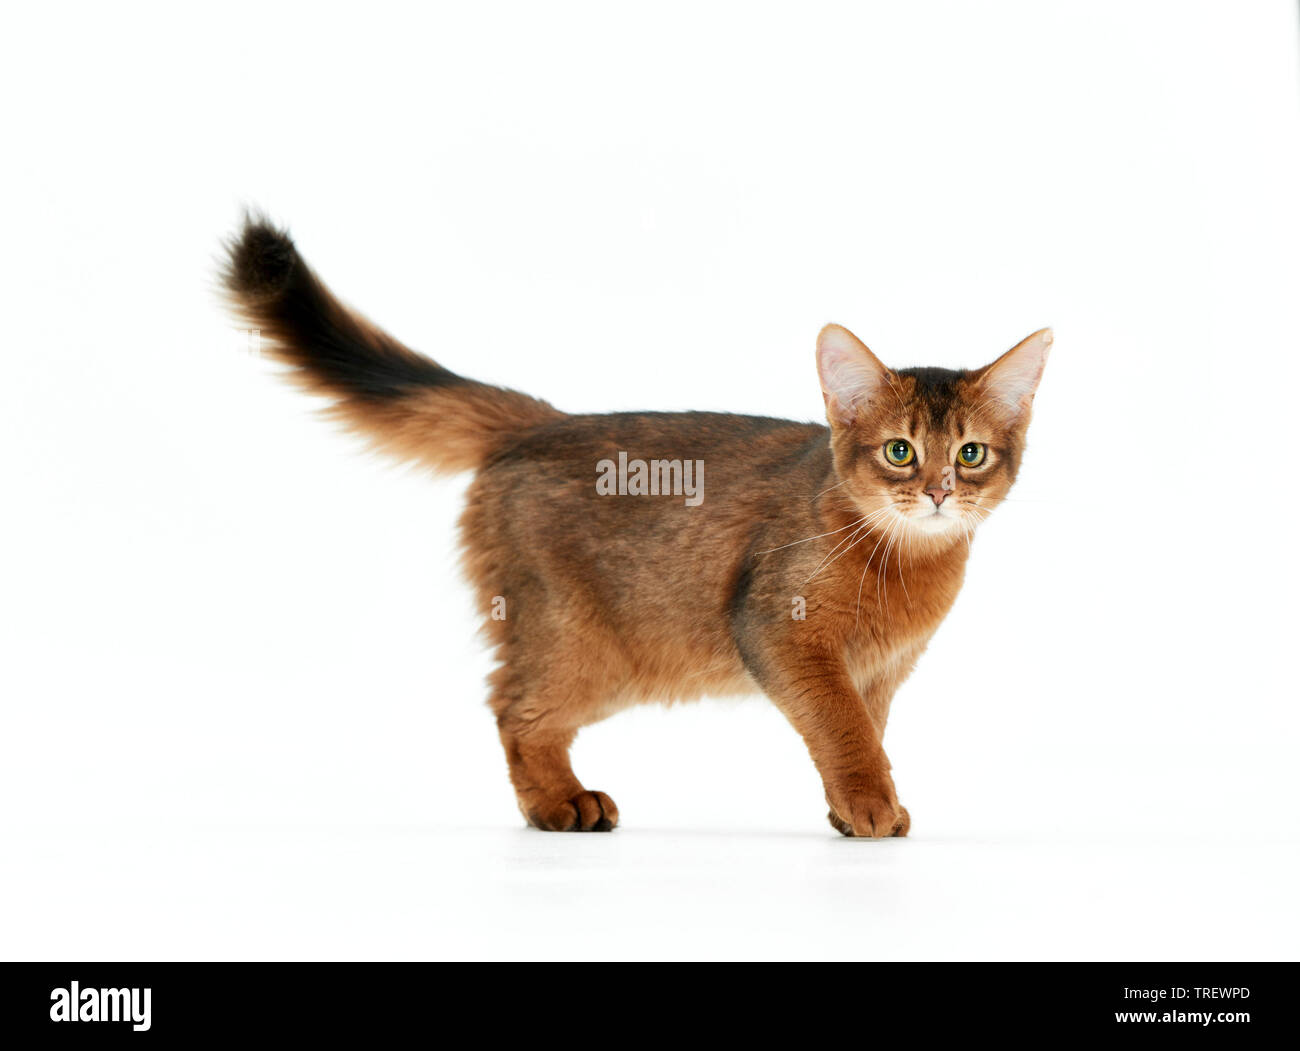 Gatto somalo. Kitten passeggiate, visto da lato a. Studio Immagine contro uno sfondo bianco Foto Stock